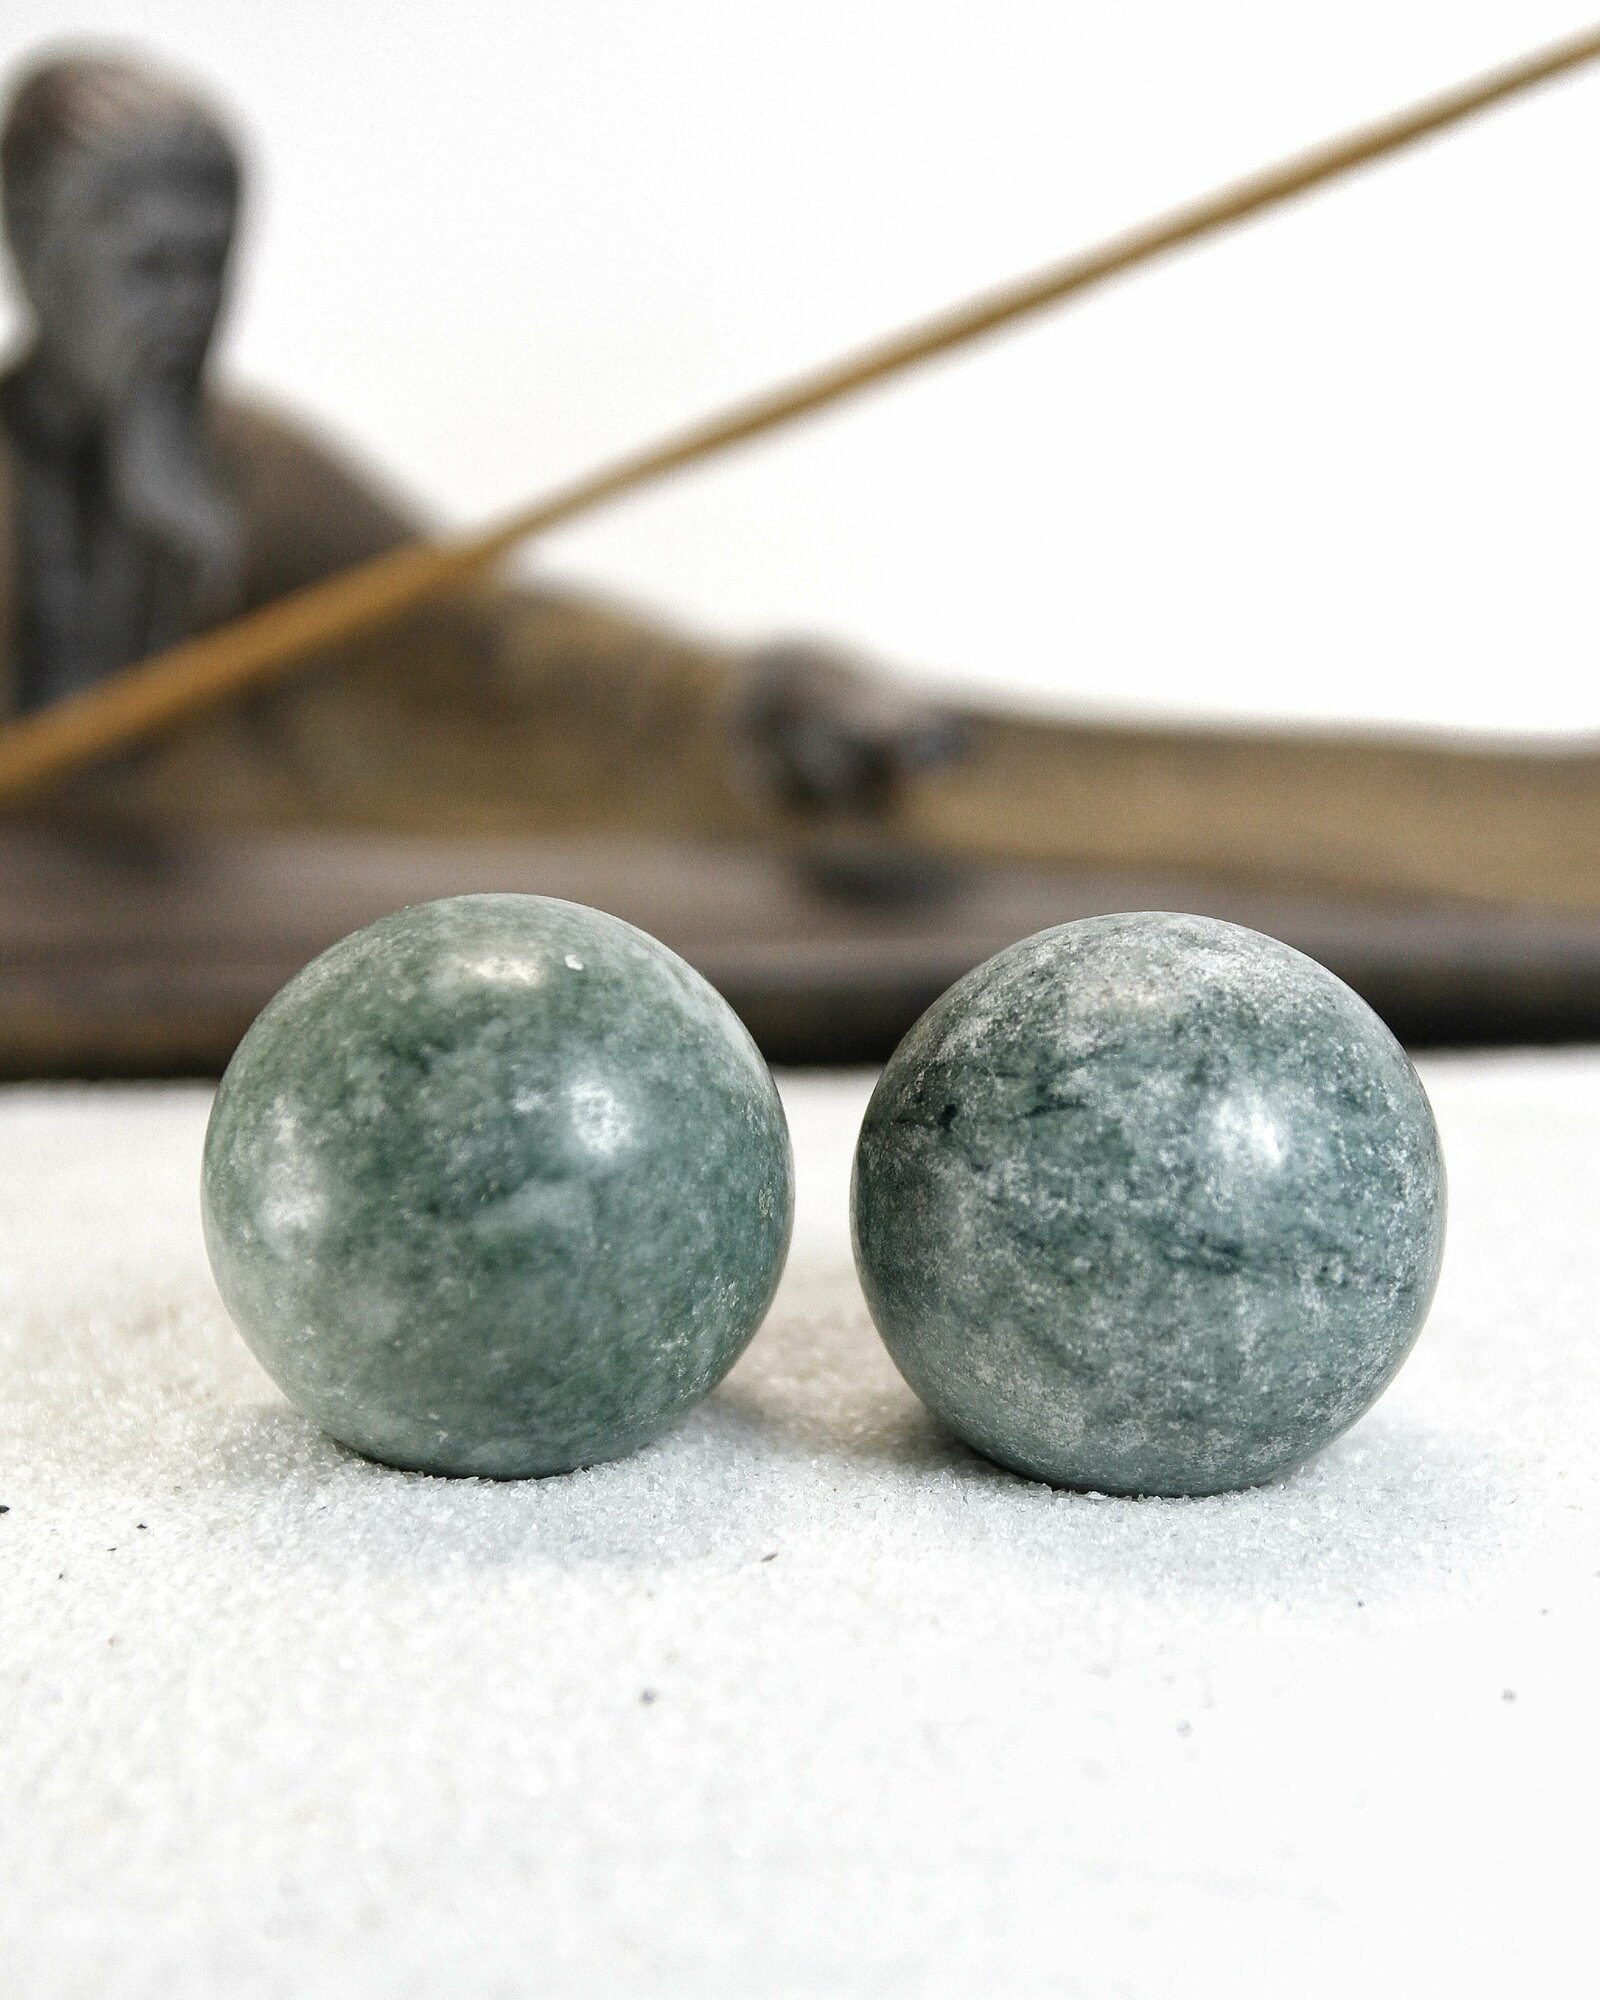 Массажные шары Баодинг - диаметр 35 мм, натуральный камень, цвет зеленый, 2 шт - для стоунтерапии, здоровья и антистресса